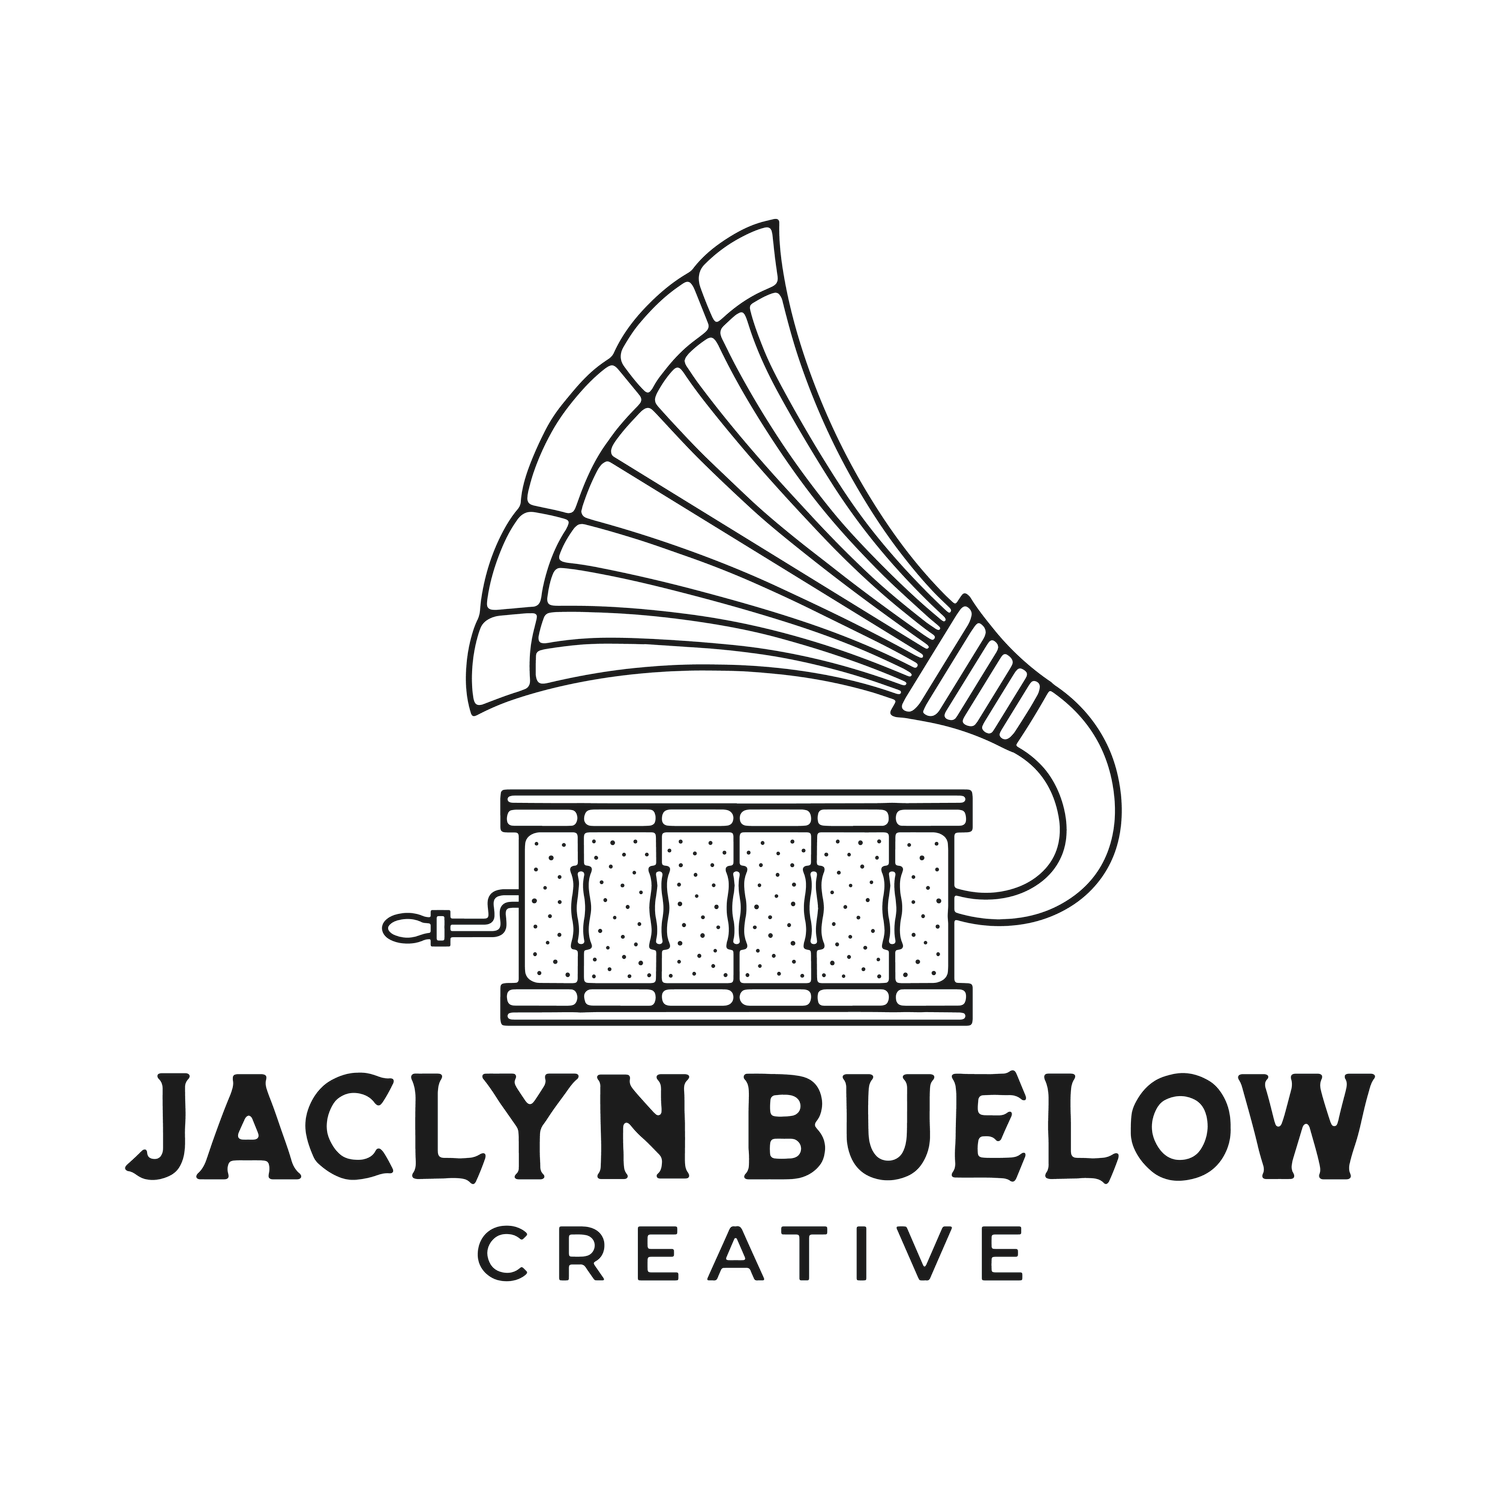 Jaclyn Buelow Creative